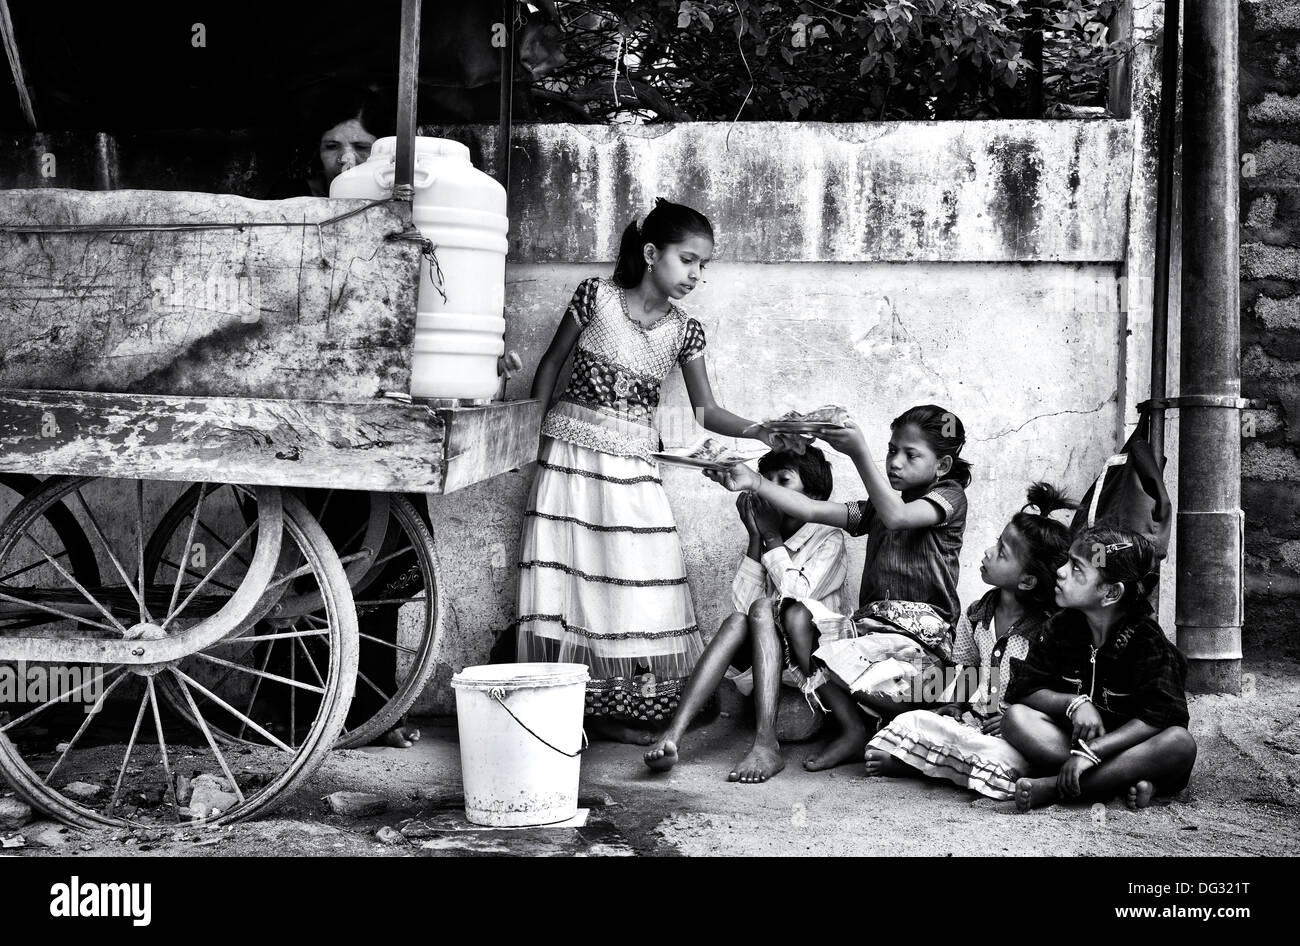 Indische niedrigere Kaste Kinder essen Dosa zum Frühstück auf einer indischen Straße. Andhra Pradesh, Indien. Monochrom Stockfoto